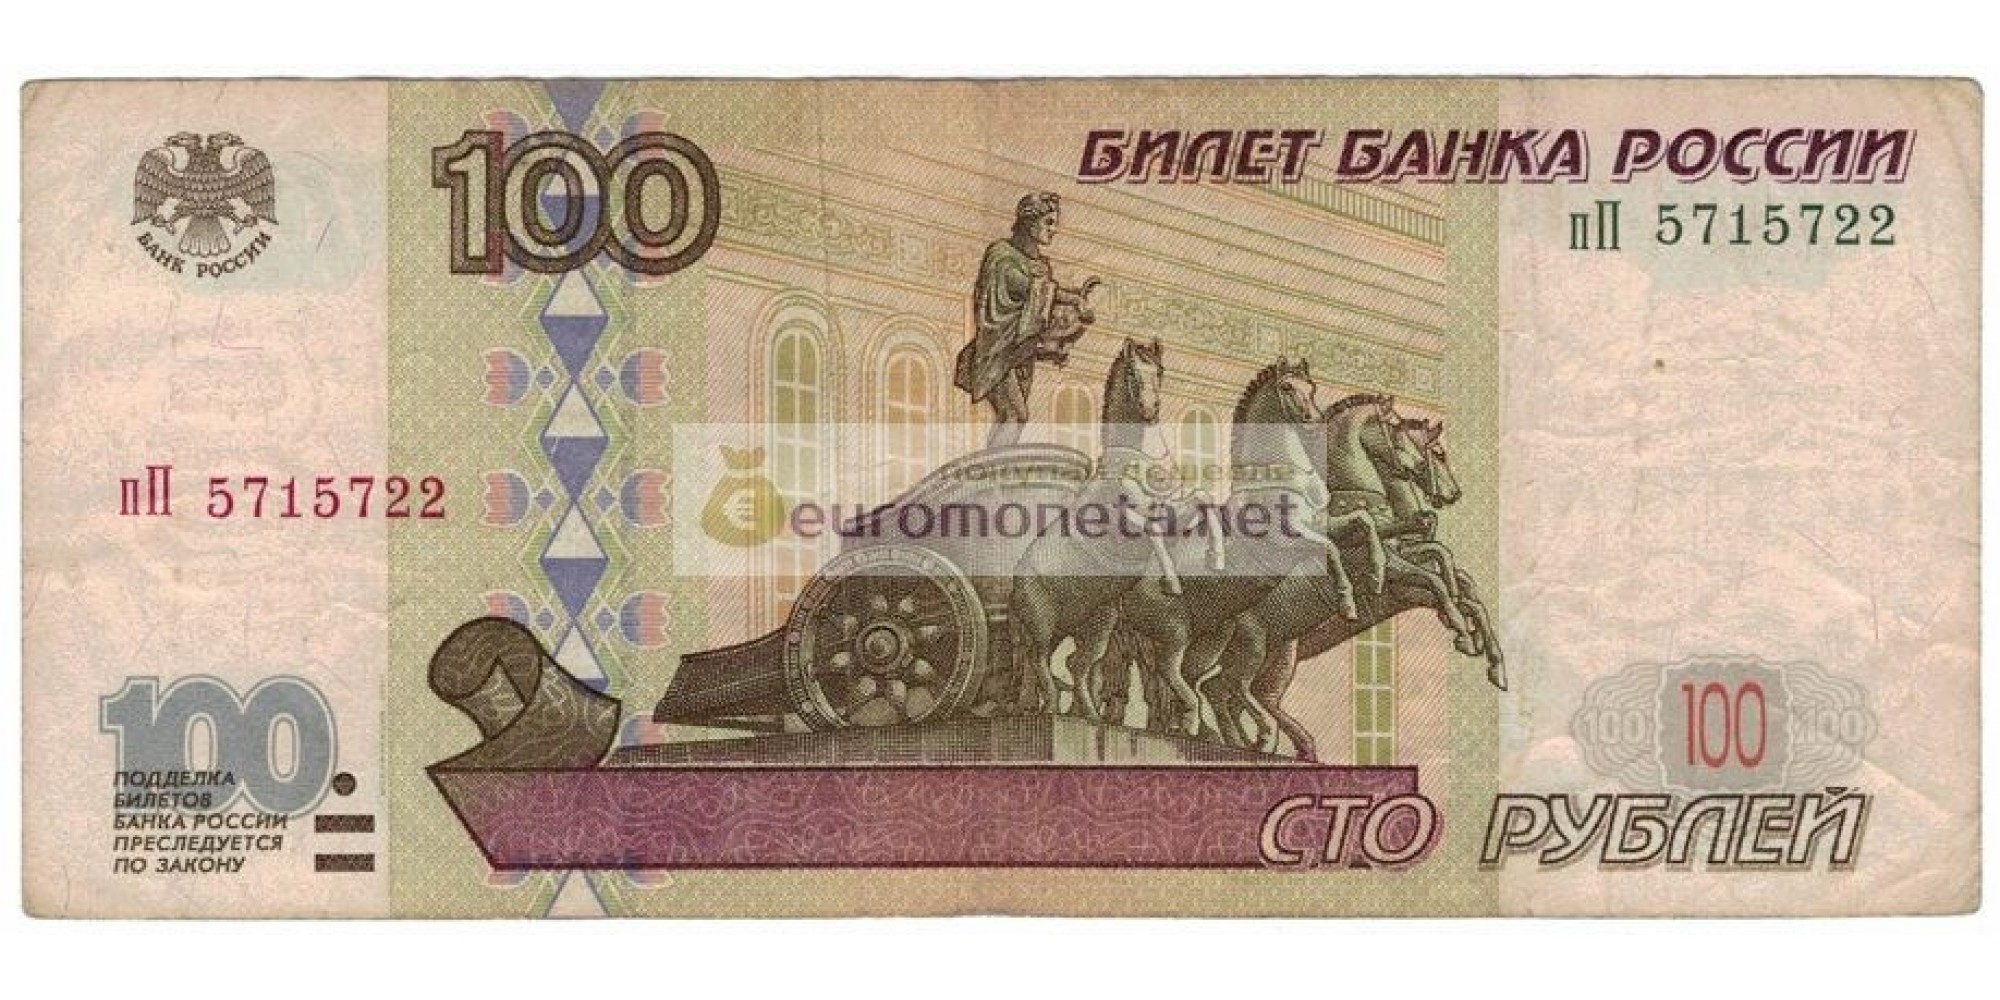 Россия 100 рублей 1997 год модификация 2001 год серия пП 5715722